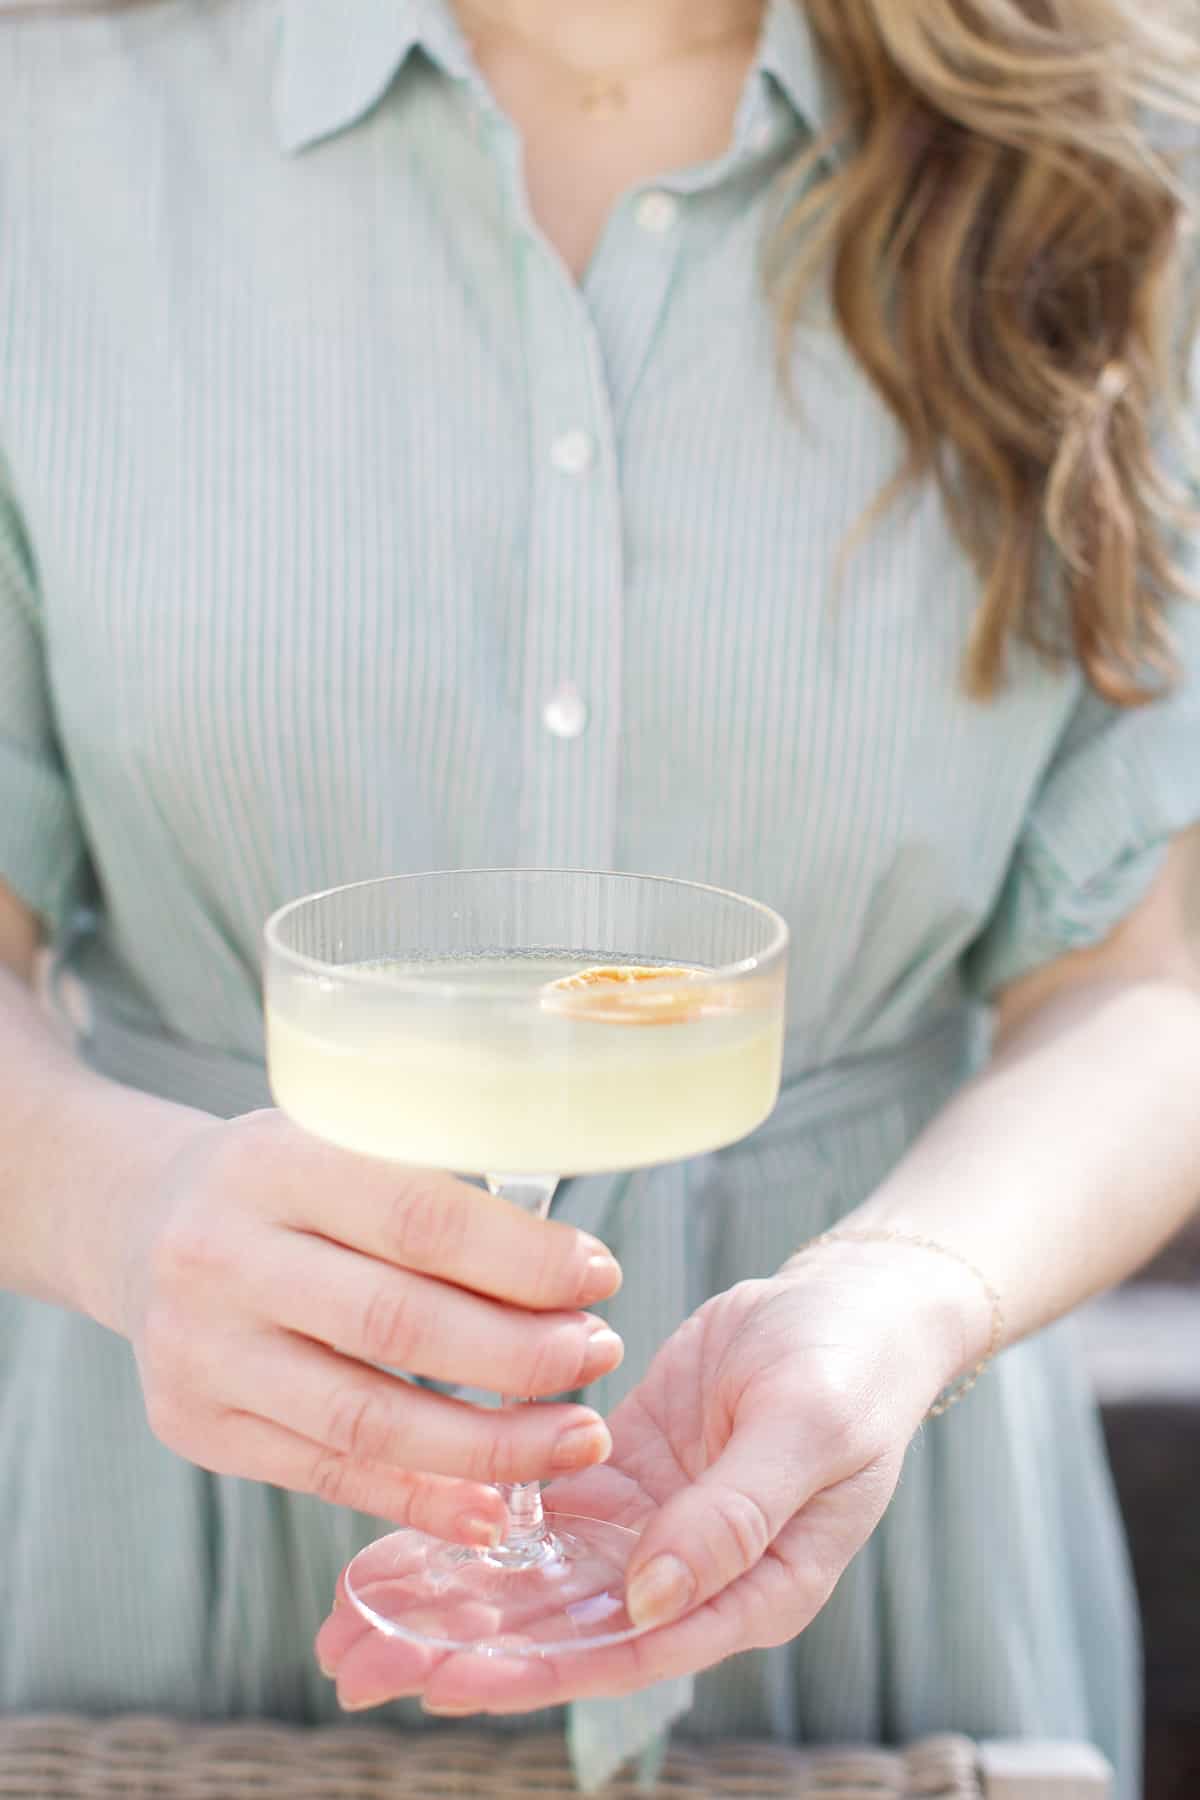 Eden Passante holding a lemon spritz cocktail.